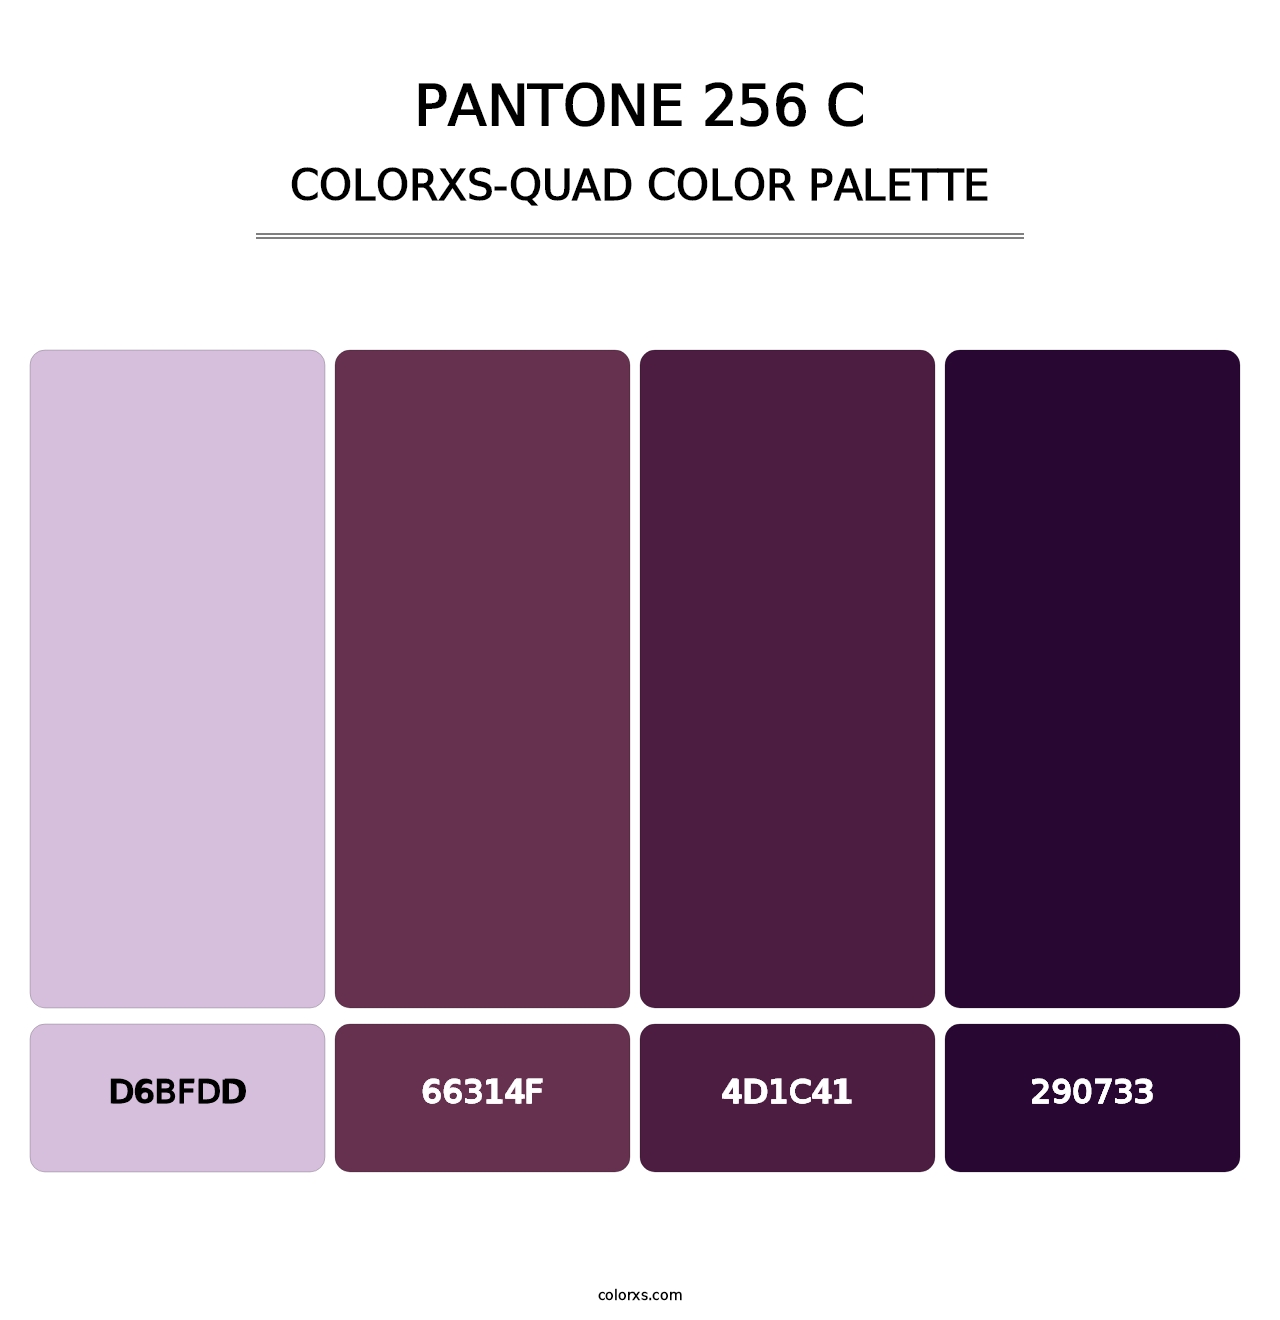 PANTONE 256 C - Colorxs Quad Palette